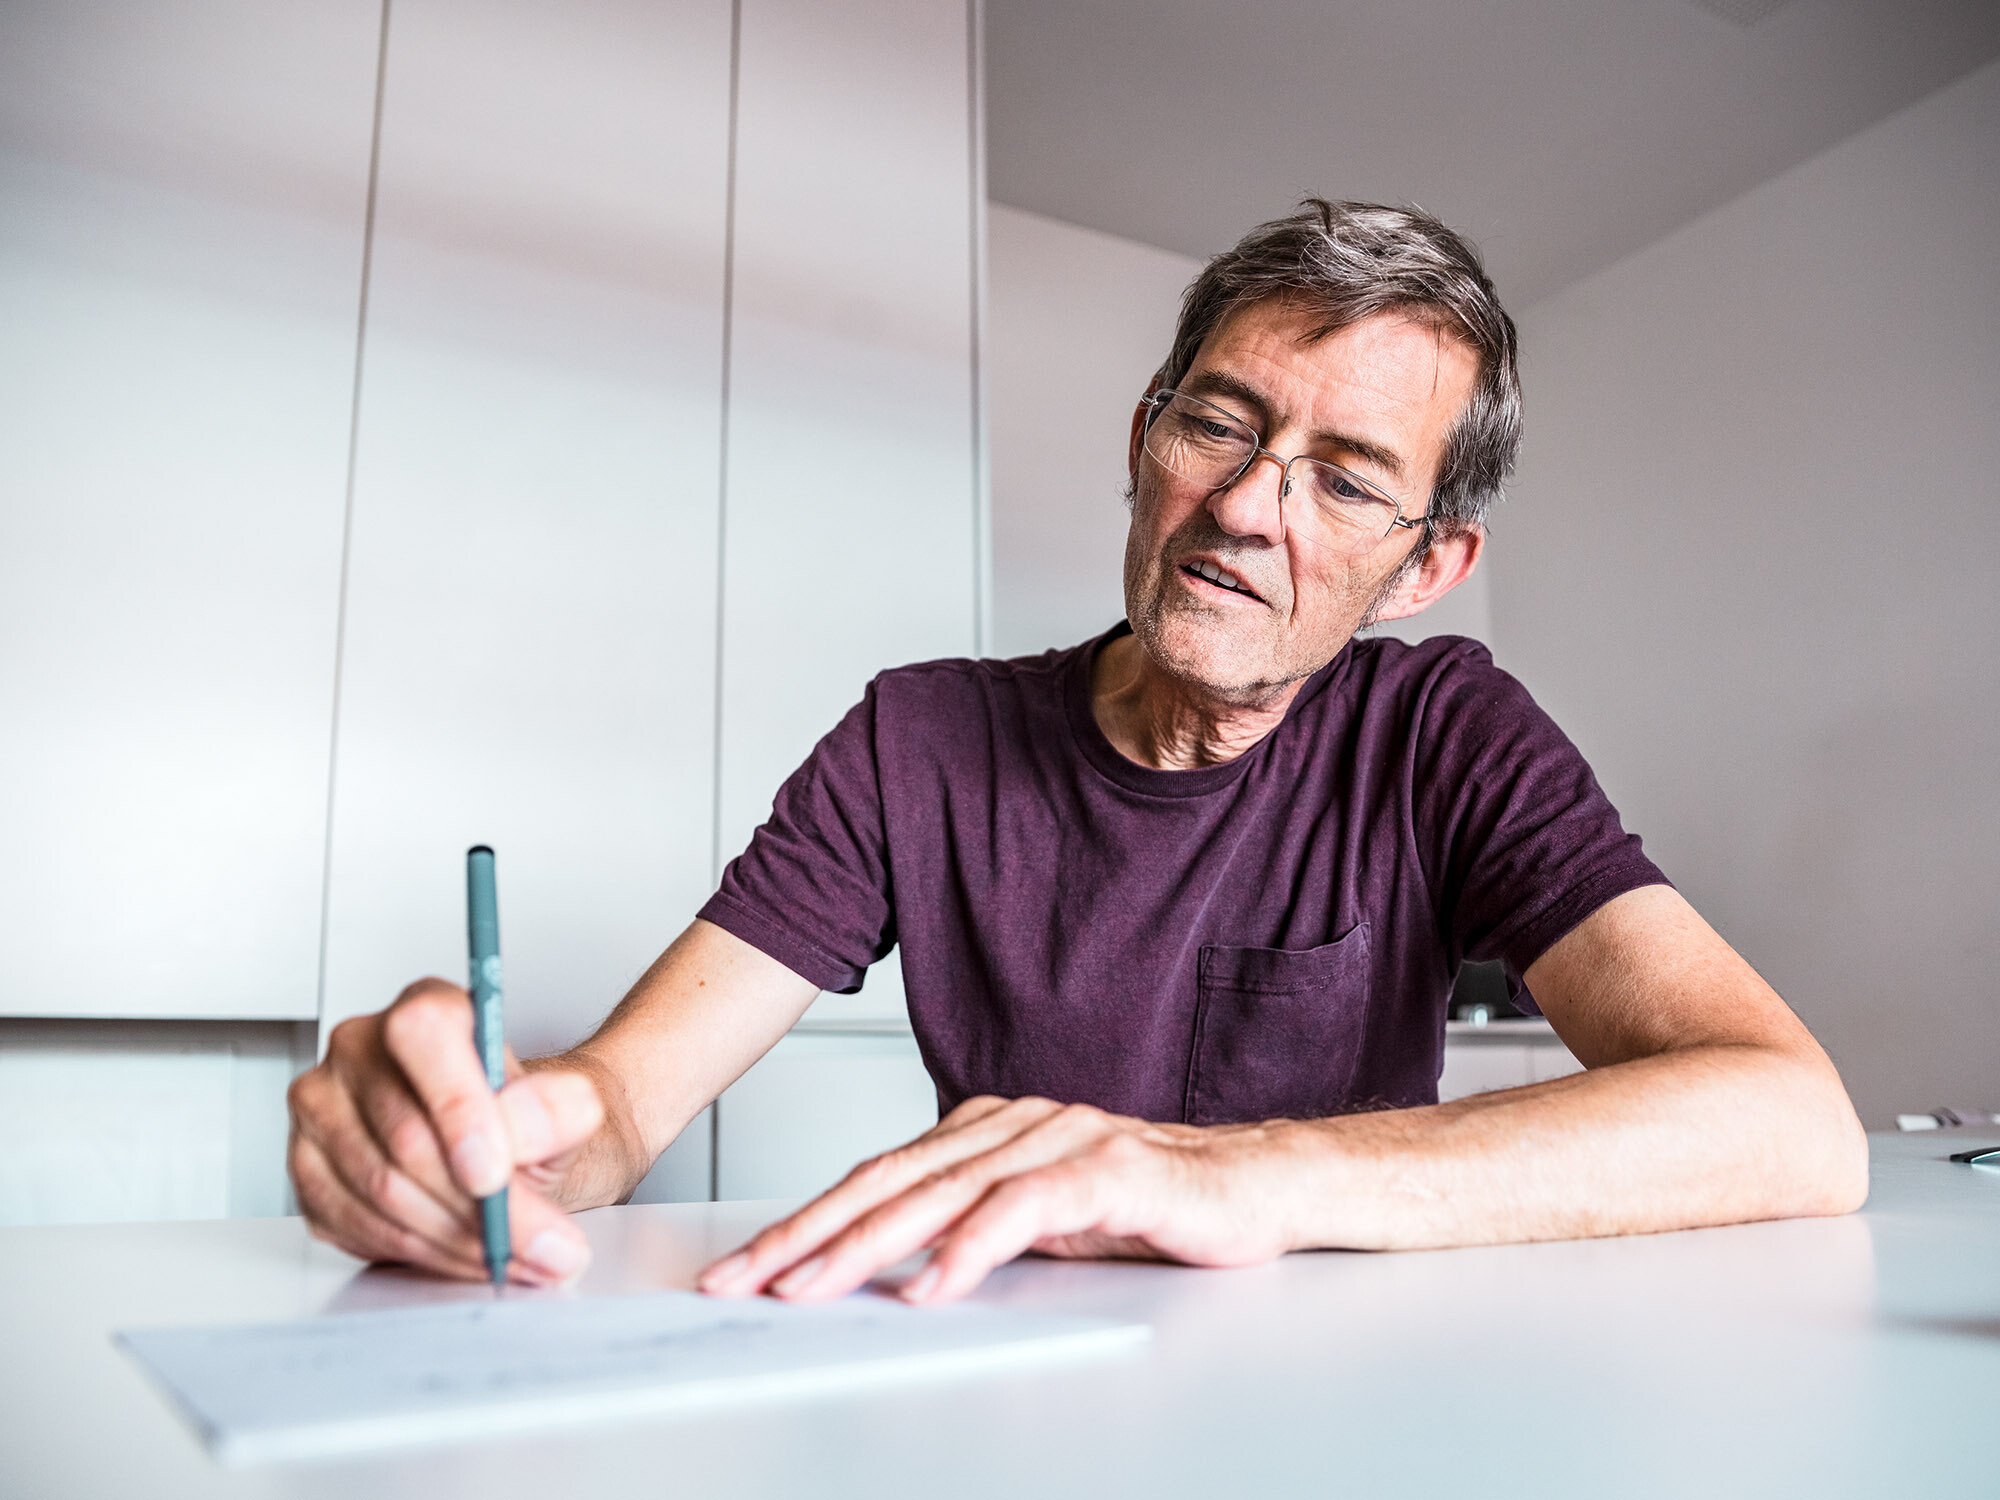 Architekt Dominique Cornaert sitzt an einem weißen Tisch und zeichnet, hinter ihm sind weiße Wände sowie ein weißer Schrank zu sehen.